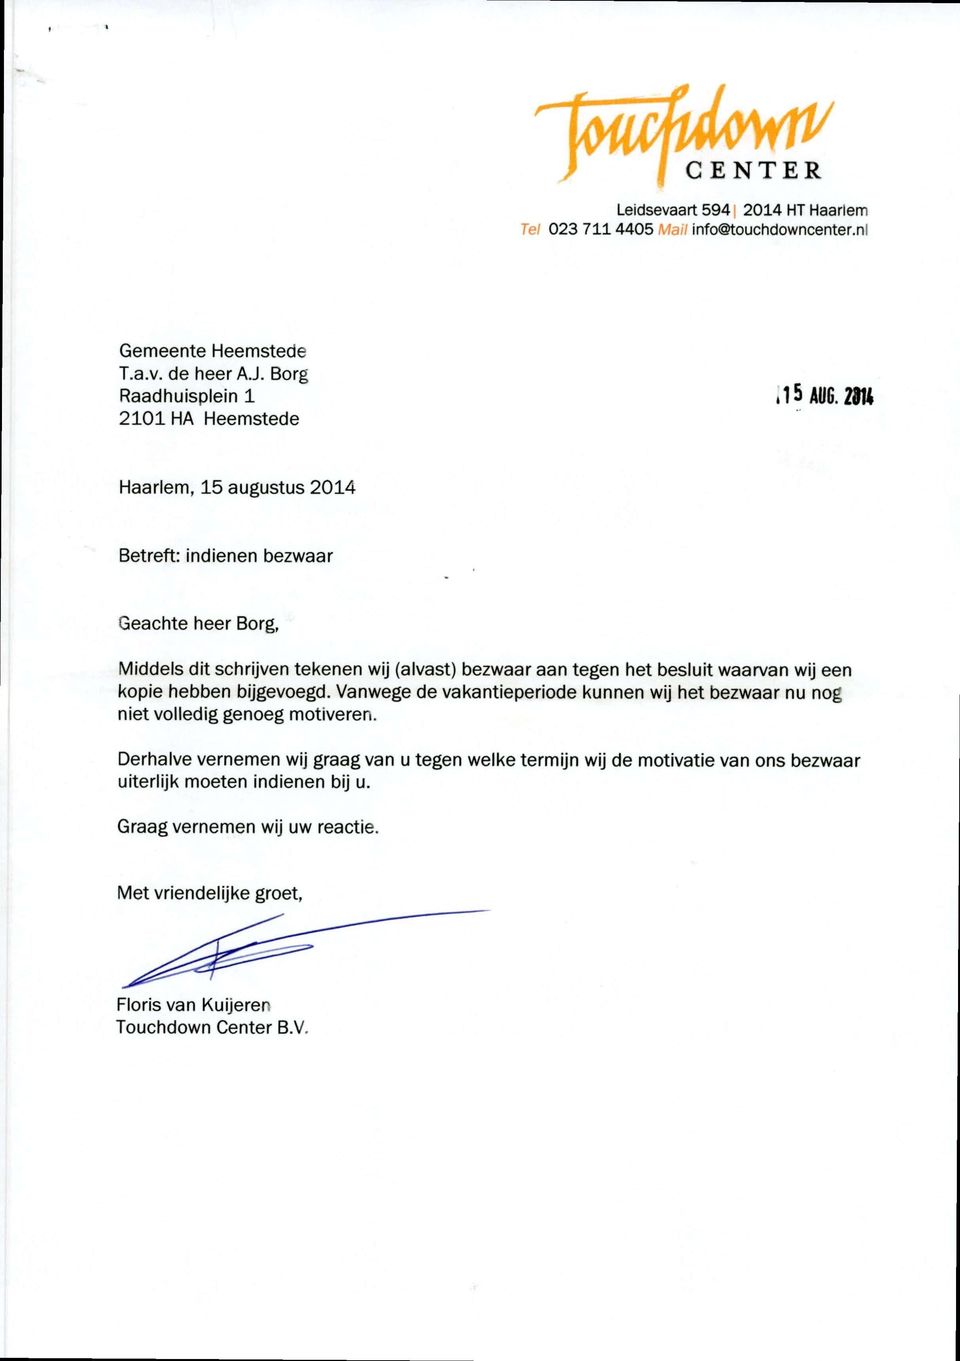 29tt Haarlem, 15 augustus 2014 Betreft: indienen bezwaar Geachte heer Borg, Middels dit schrijven tekenen wij (alvast) bezwaar aan tegen het besluit waarvan wij een